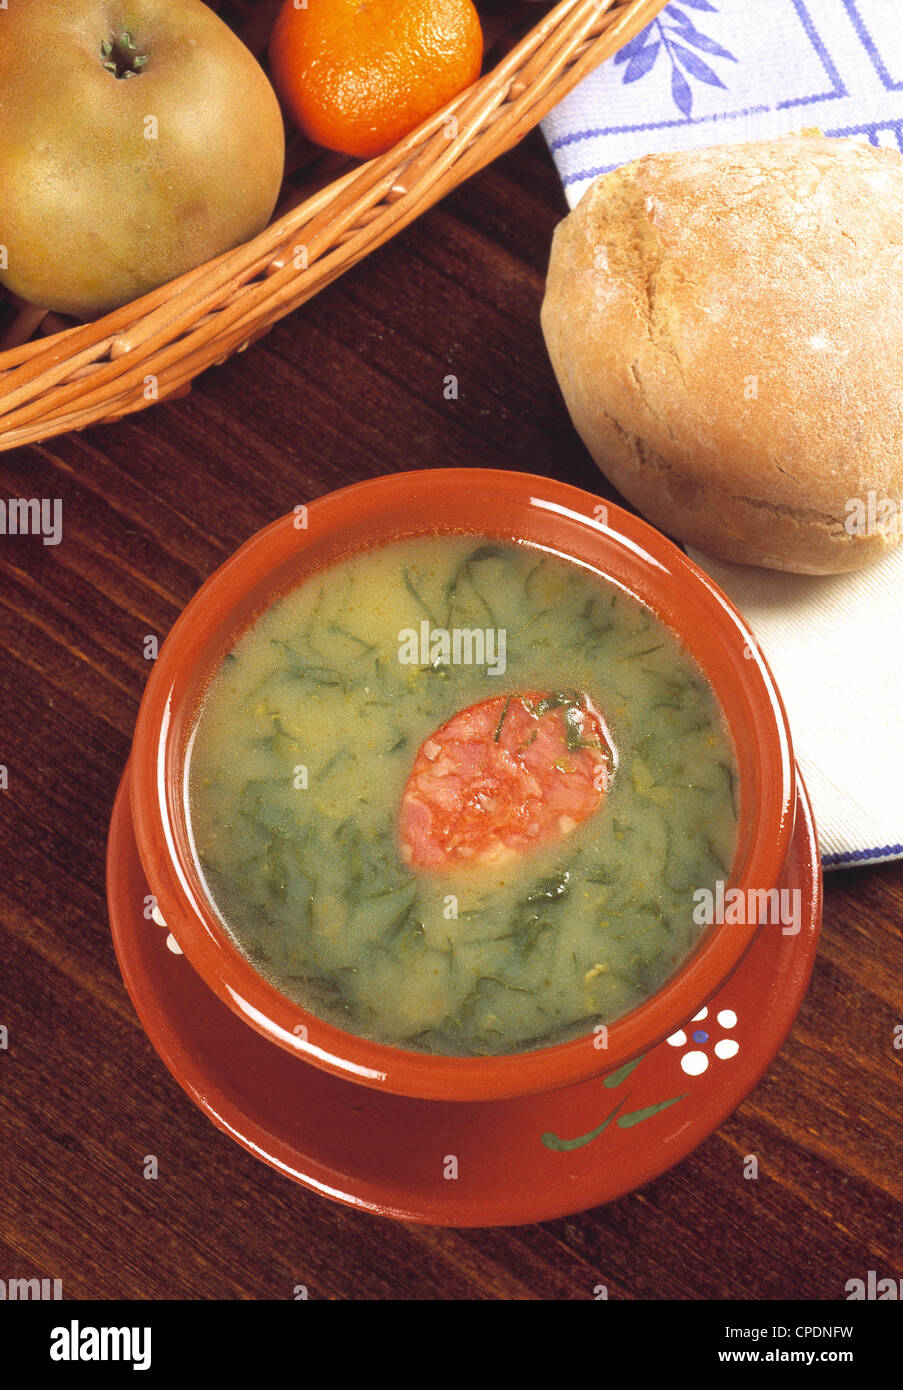 Caldo verde Portugal Soup Stock Photo